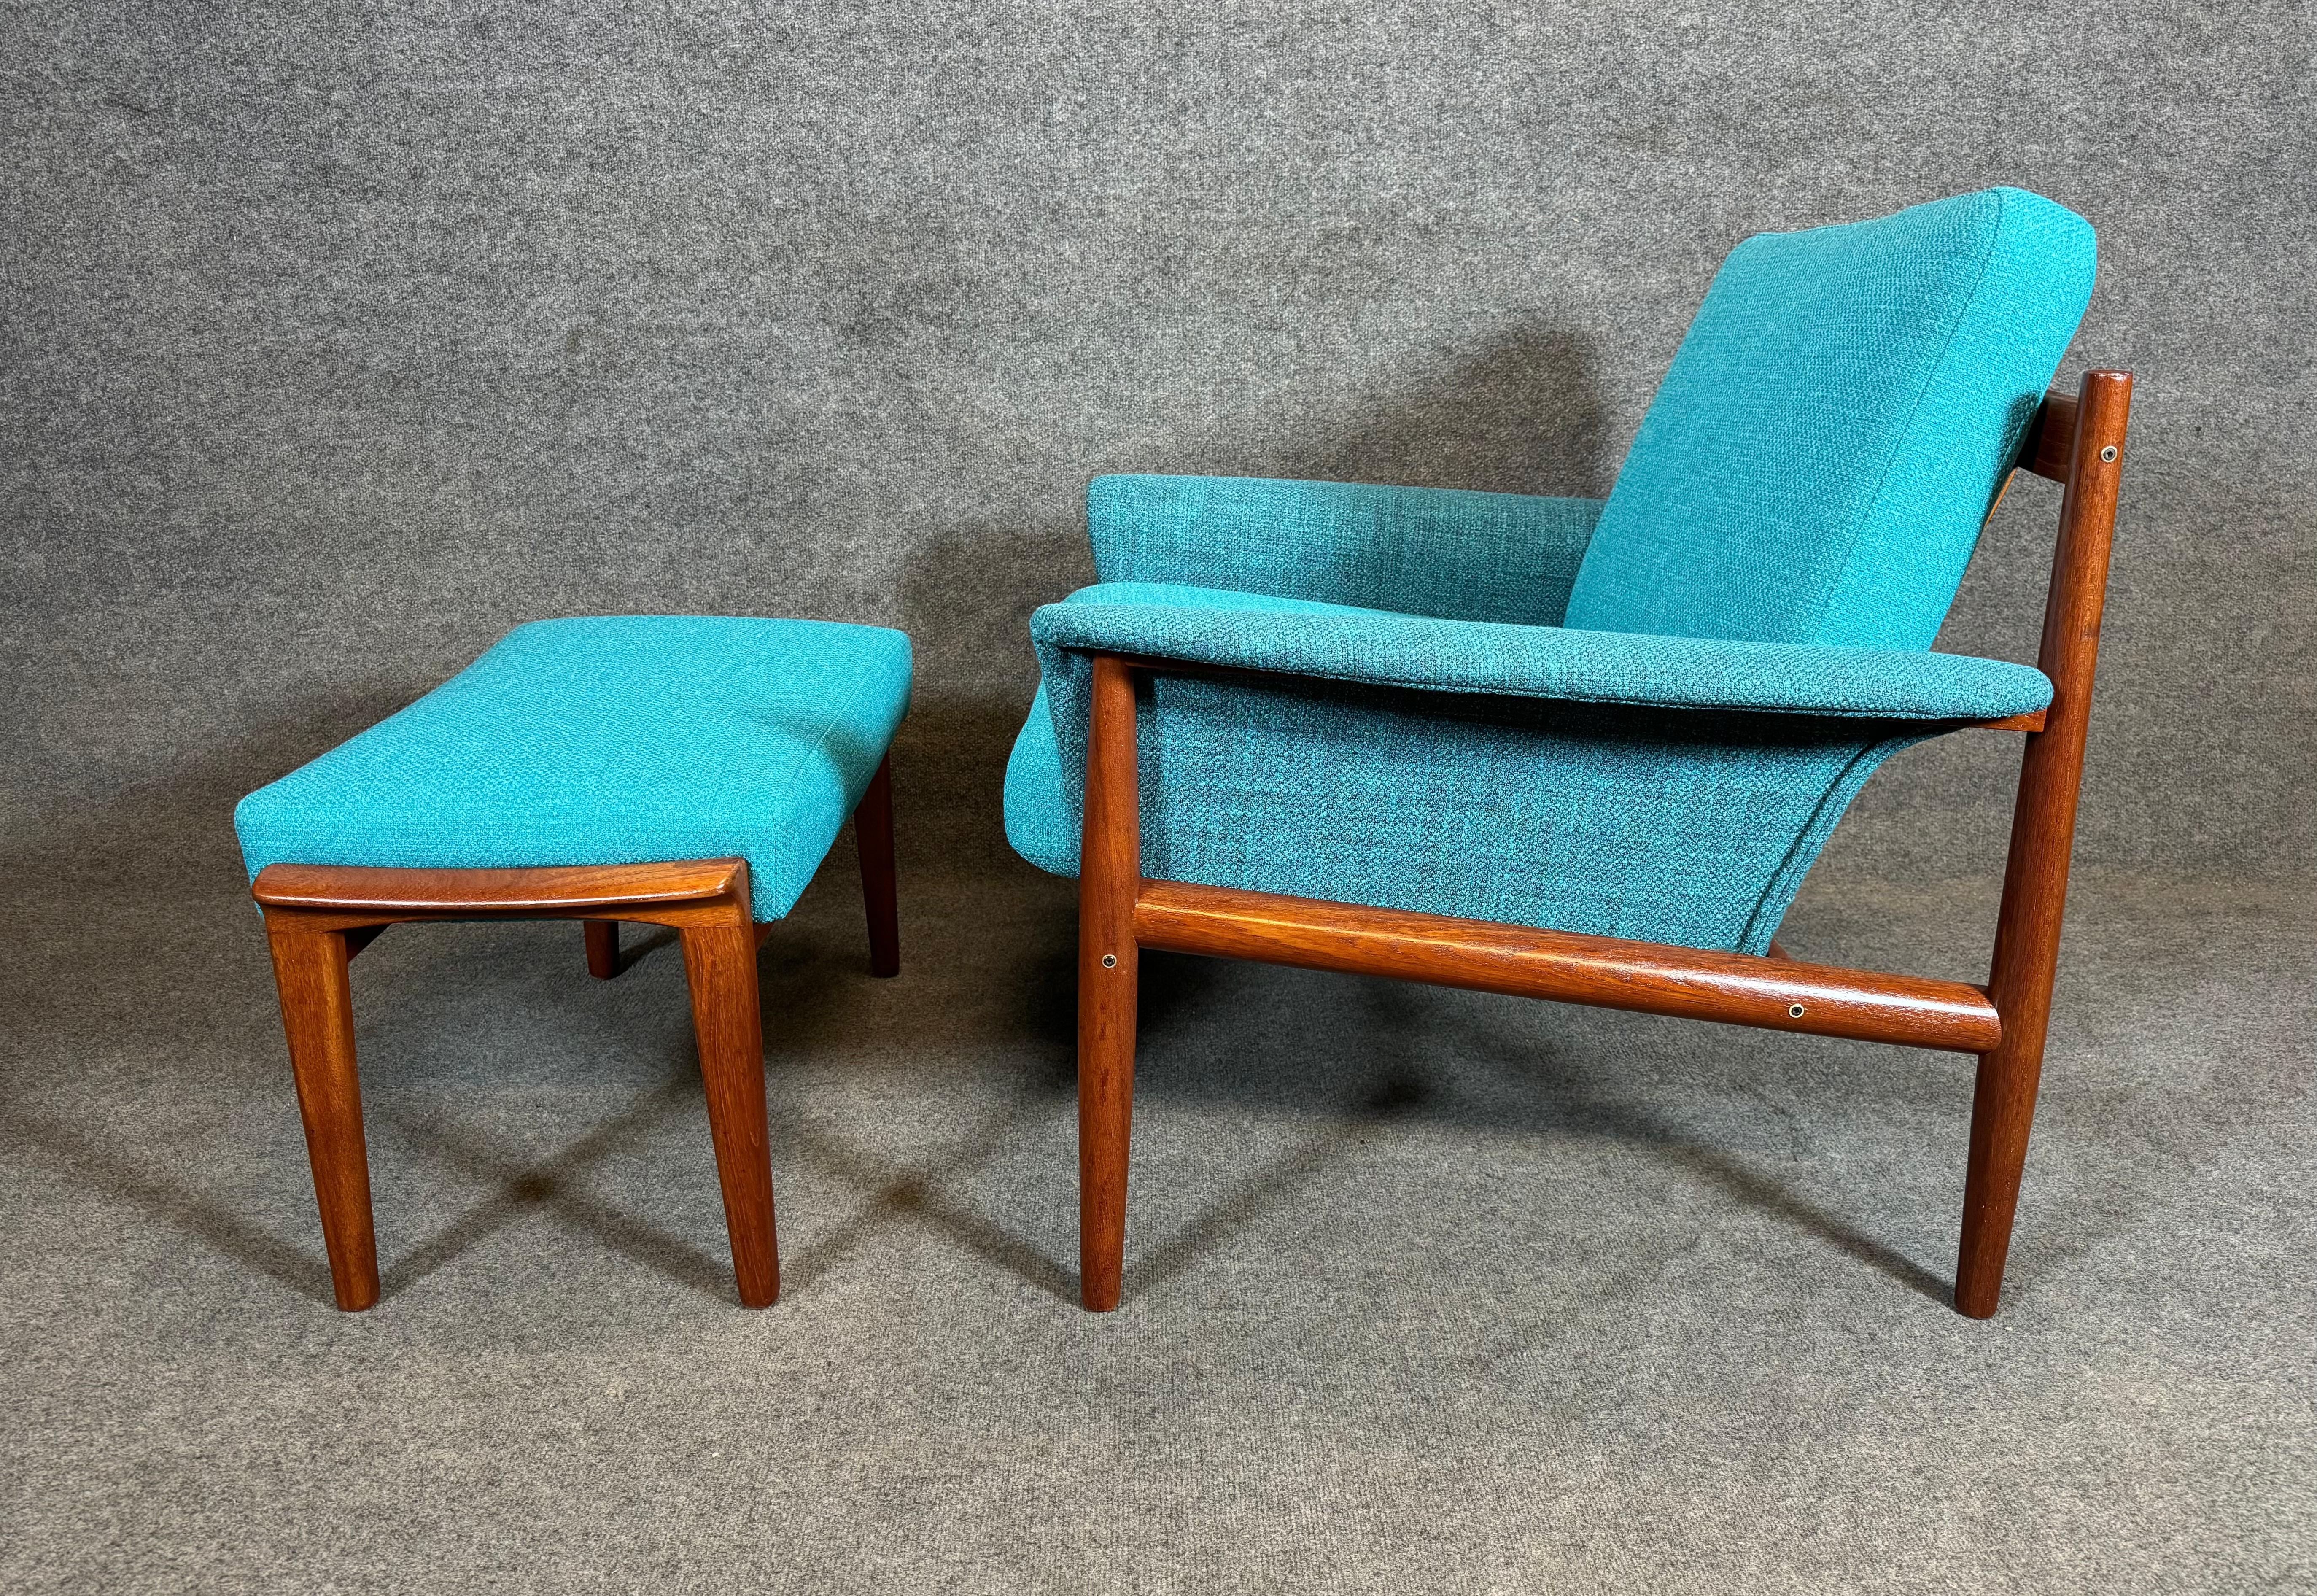 Voici un magnifique fauteuil moderne scandinave en teck massif conçu par Grete Jalk et fabriqué par France & Son au Danemark dans les années 1960, associé à un ottoman d'époque fabriqué en Suède par Broderna Andersson.
Cet ensemble confortable,